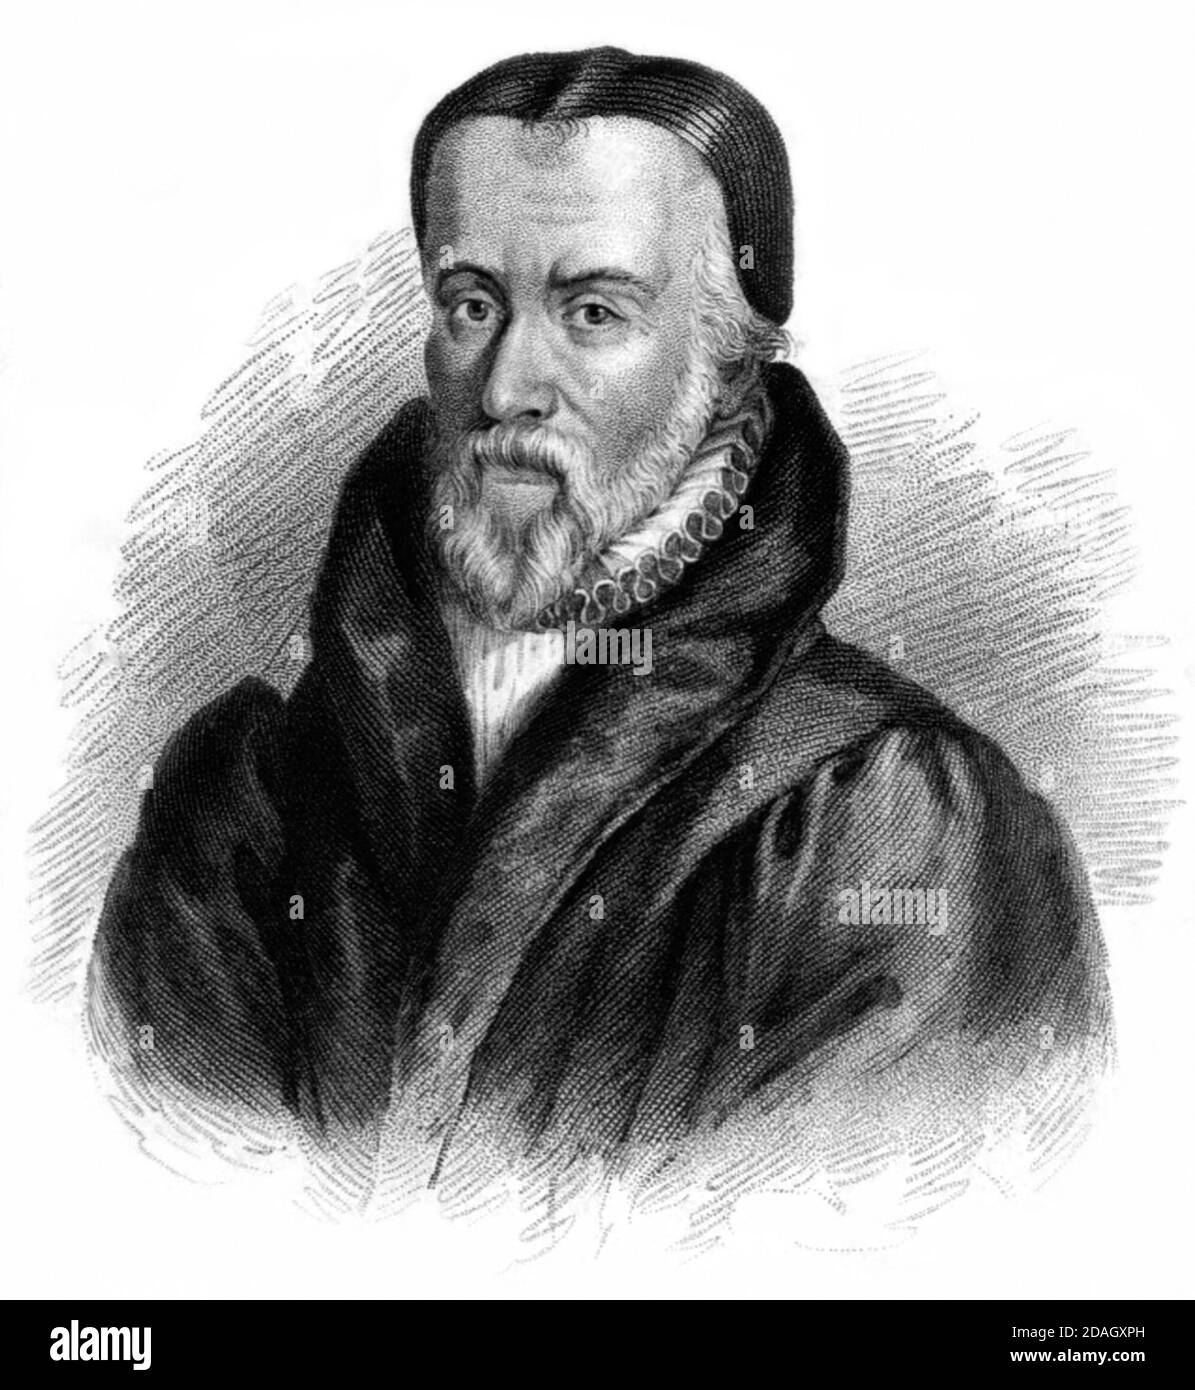 William Tyndale (1494 - 1536) était un érudit et figure de premier plan de la Réforme Protestante qui, à l'encontre de l'Église catholique et du gouvernement anglais, traduit la Bible en anglais, pour lequel il a été étranglé et brûlé sur le bûcher en 1536. Banque D'Images